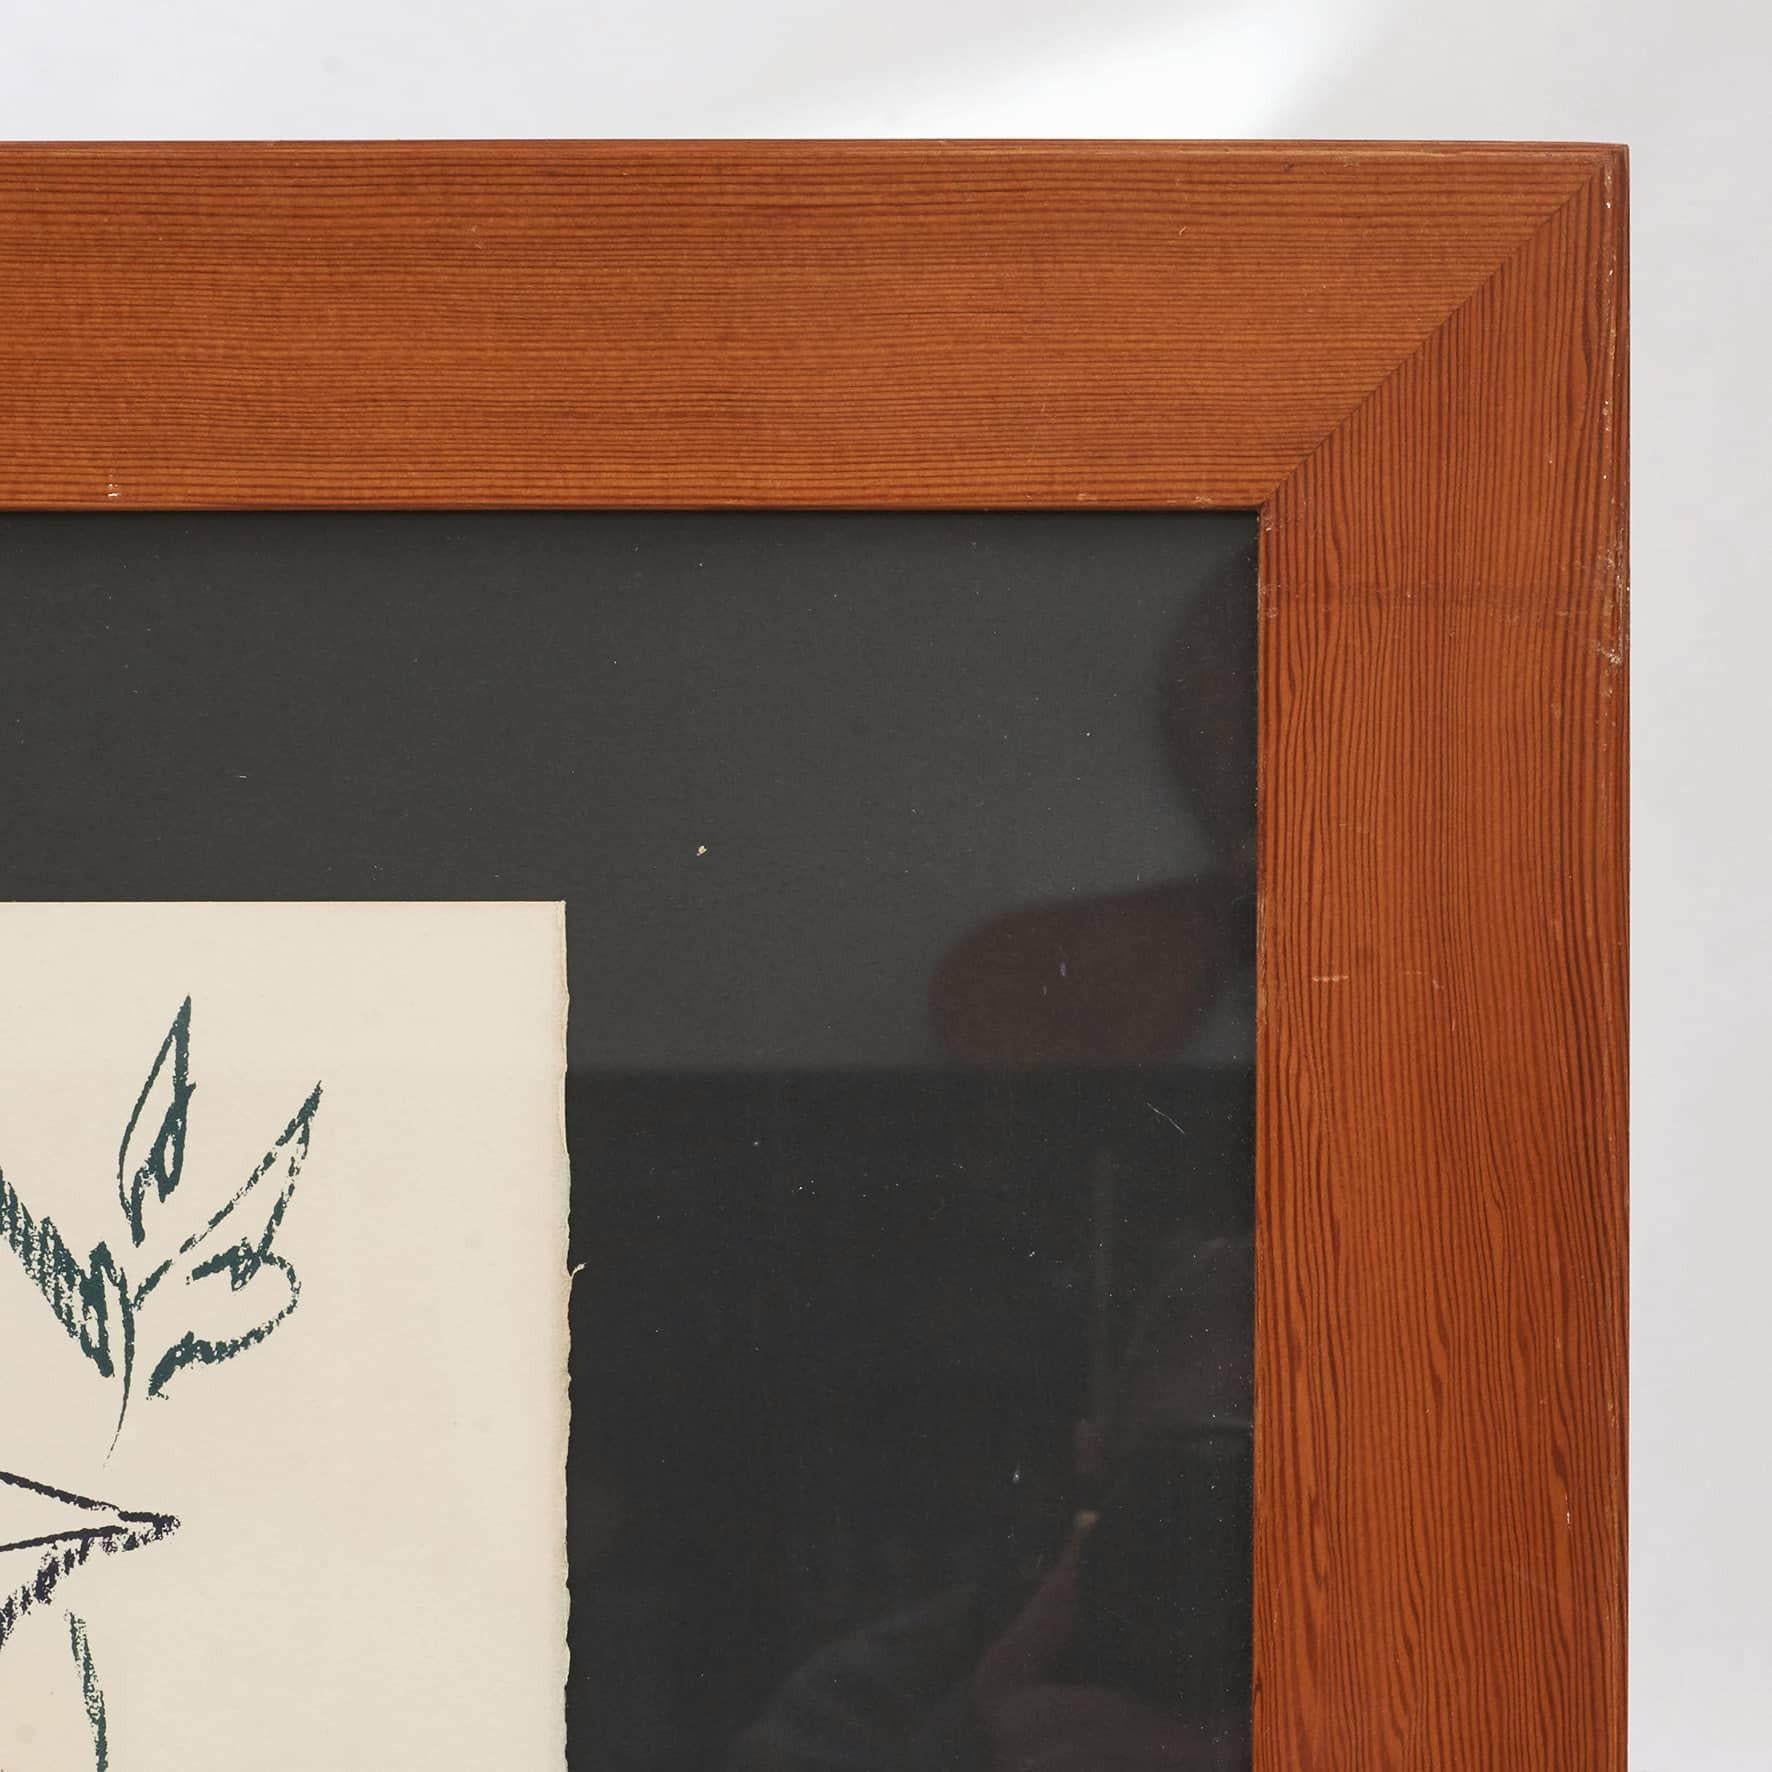 Grand cadre en pin d'Oregon de Mogens Koch, fabriqué par Rud. Ébénistes Rasmussen, c. 1965. Étiquette d'ici.
Remarque : la lithographie de Picasso est vendue et n'est pas incluse.

 